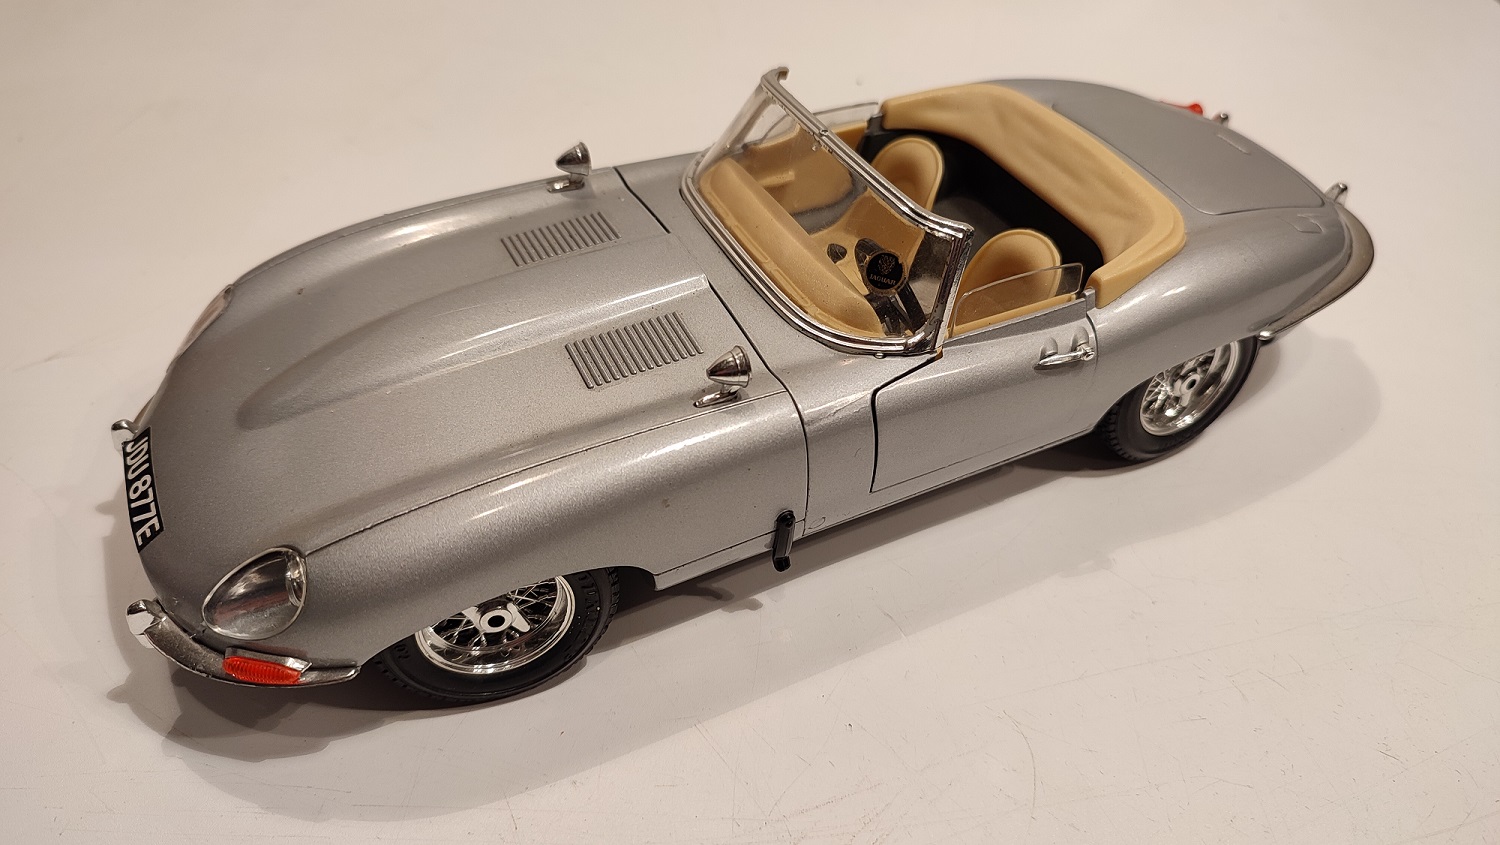 Pièce détachée miniature Burago Jaguar type E 1961 1/18 1/18e 1/18ème